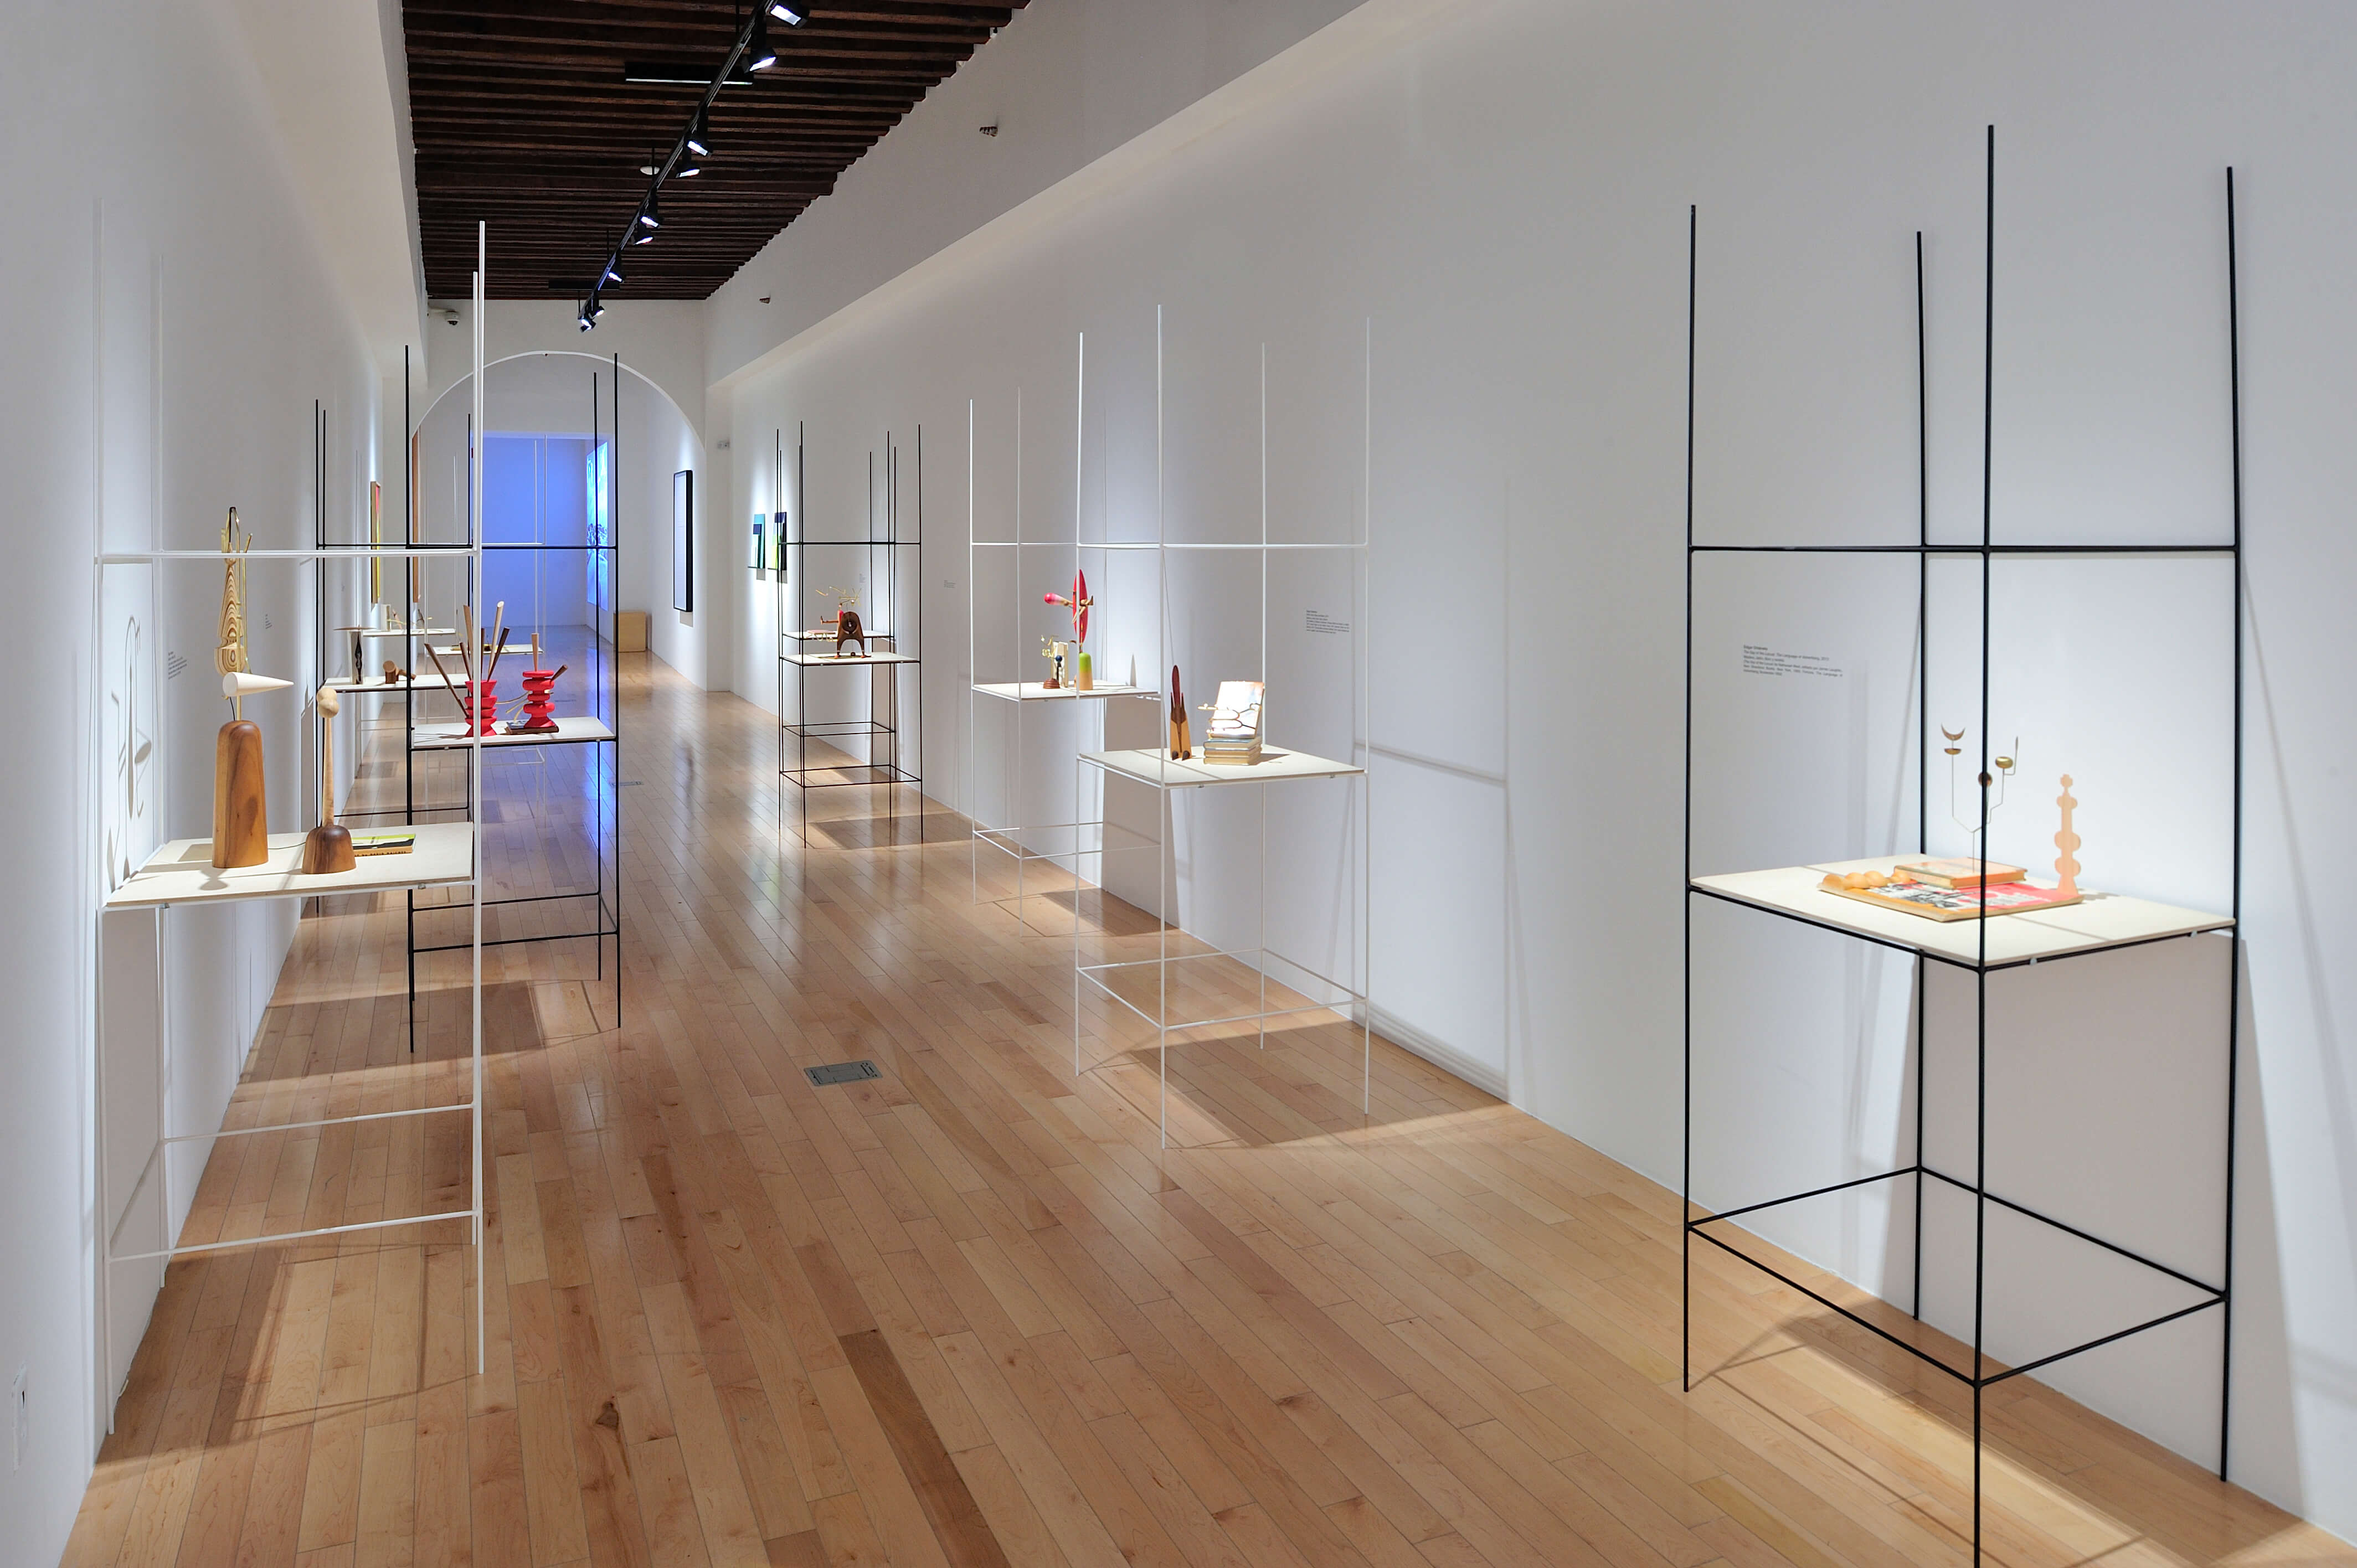 The Composing Room (After Alvin Lustig) | El tiempo en las cosas II. Salas de Arte Contemporáneo | Museo Amparo, Puebla